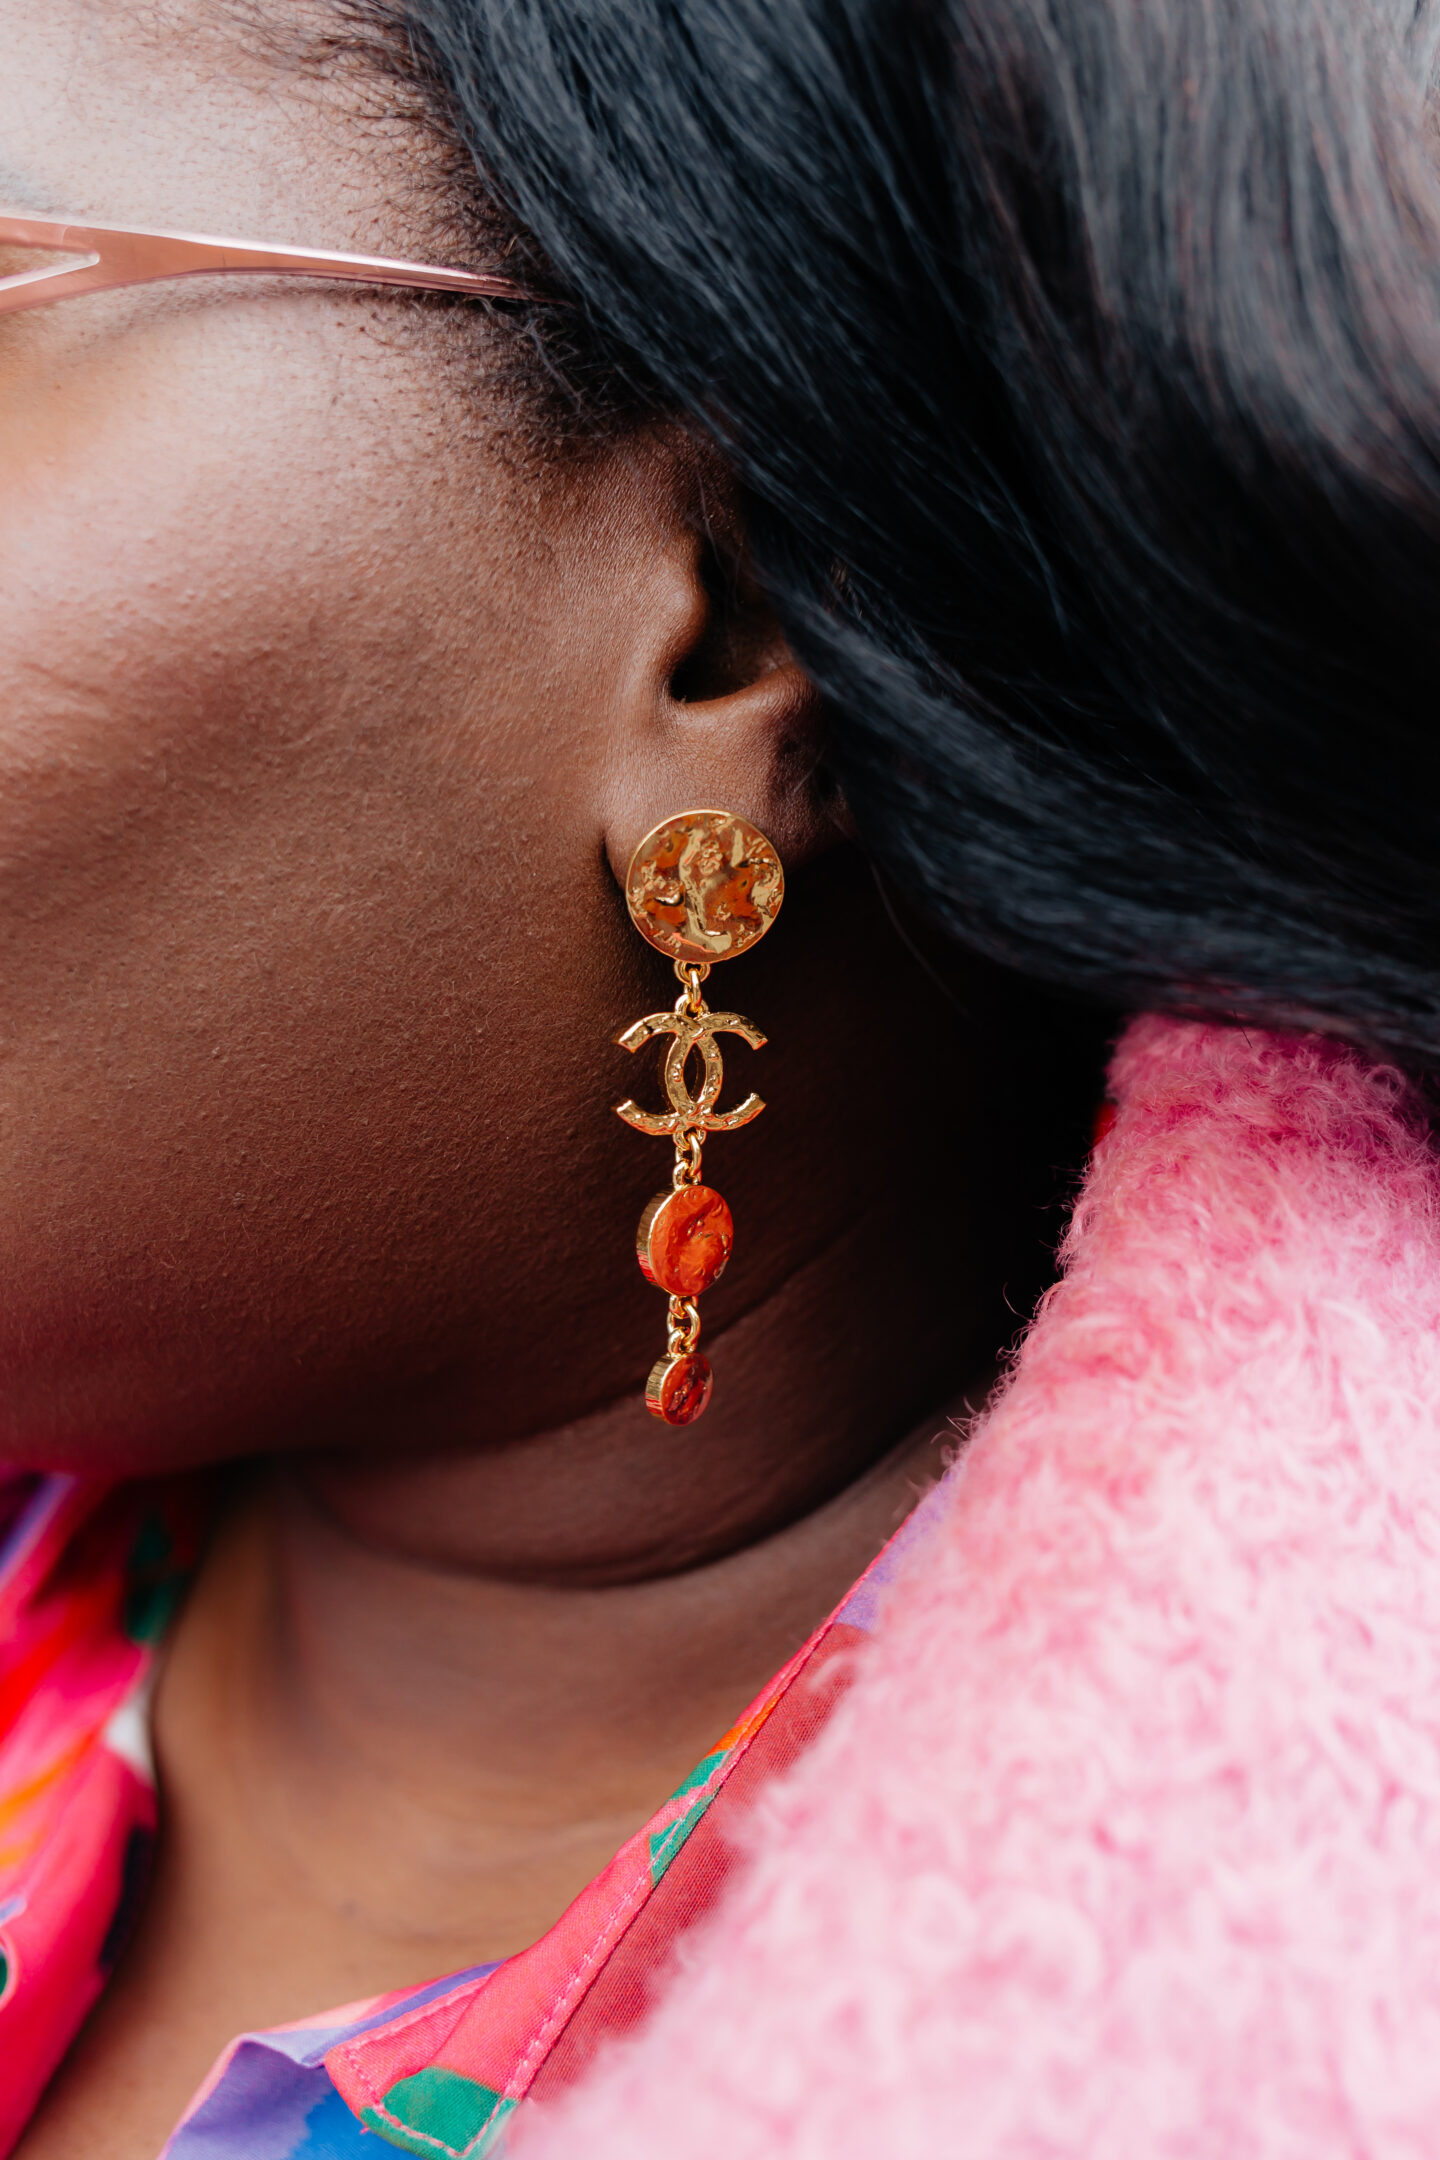 chanel pendant earrings in gold metal